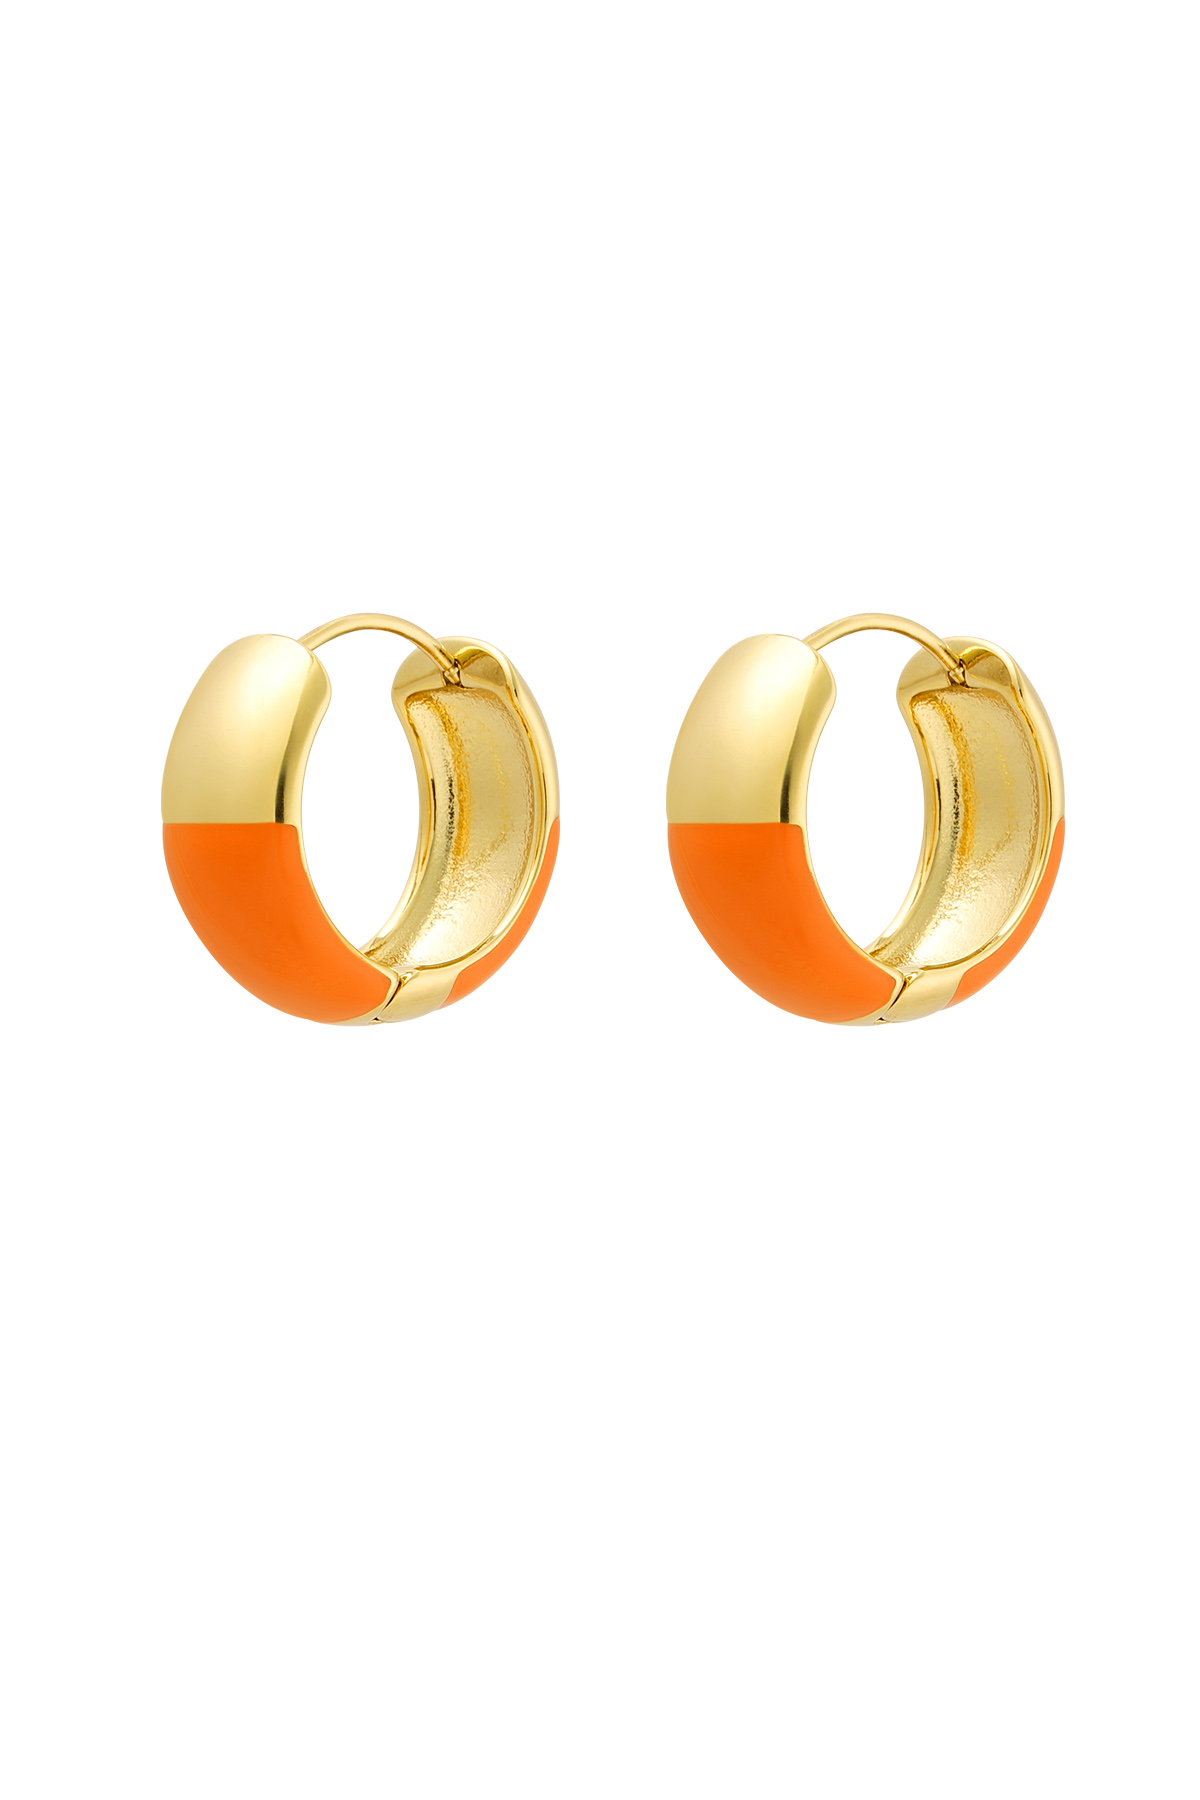 Oorbellen half gekleurd - Oranje & Goud Stainless Steel h5 